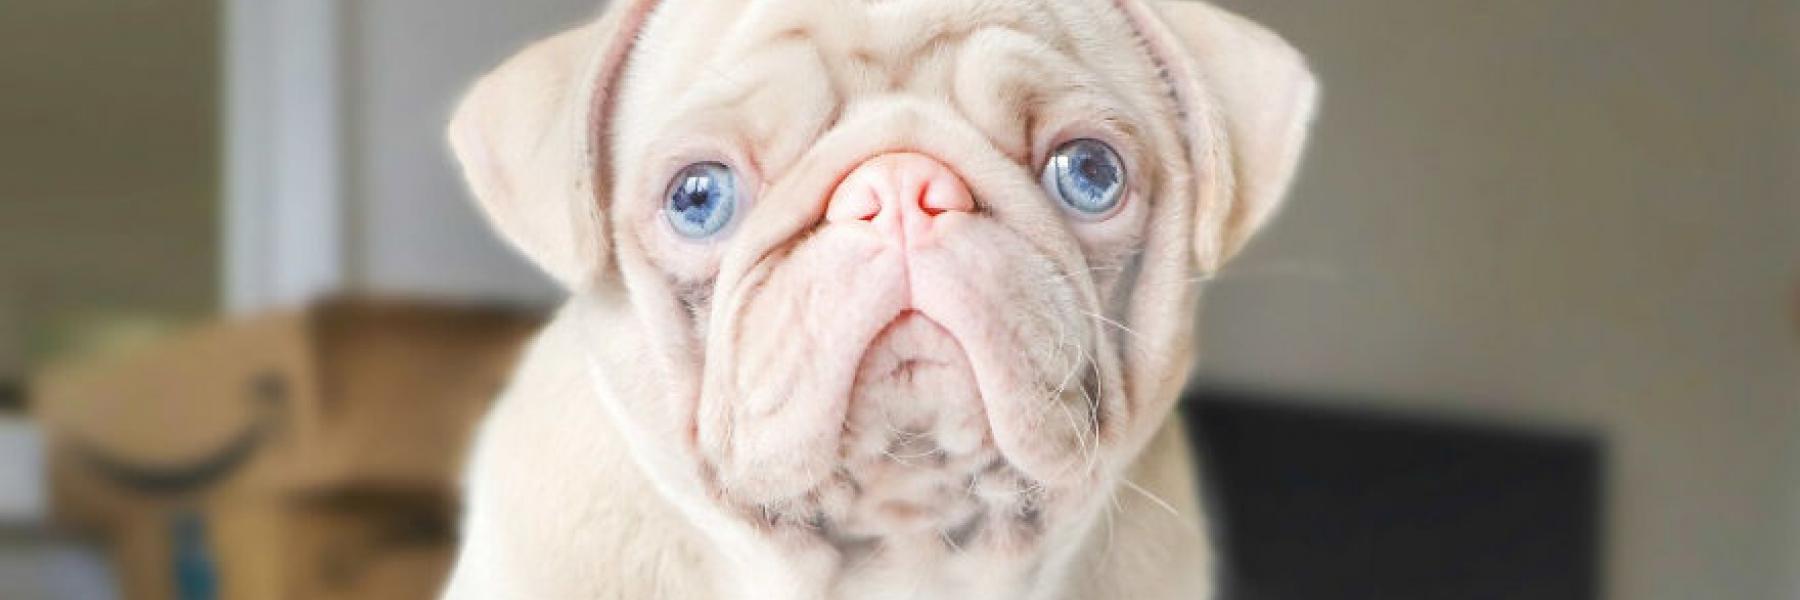  كلب نادر يخطف الأنظار بأنفه الوردي وعيونه الزرقاء